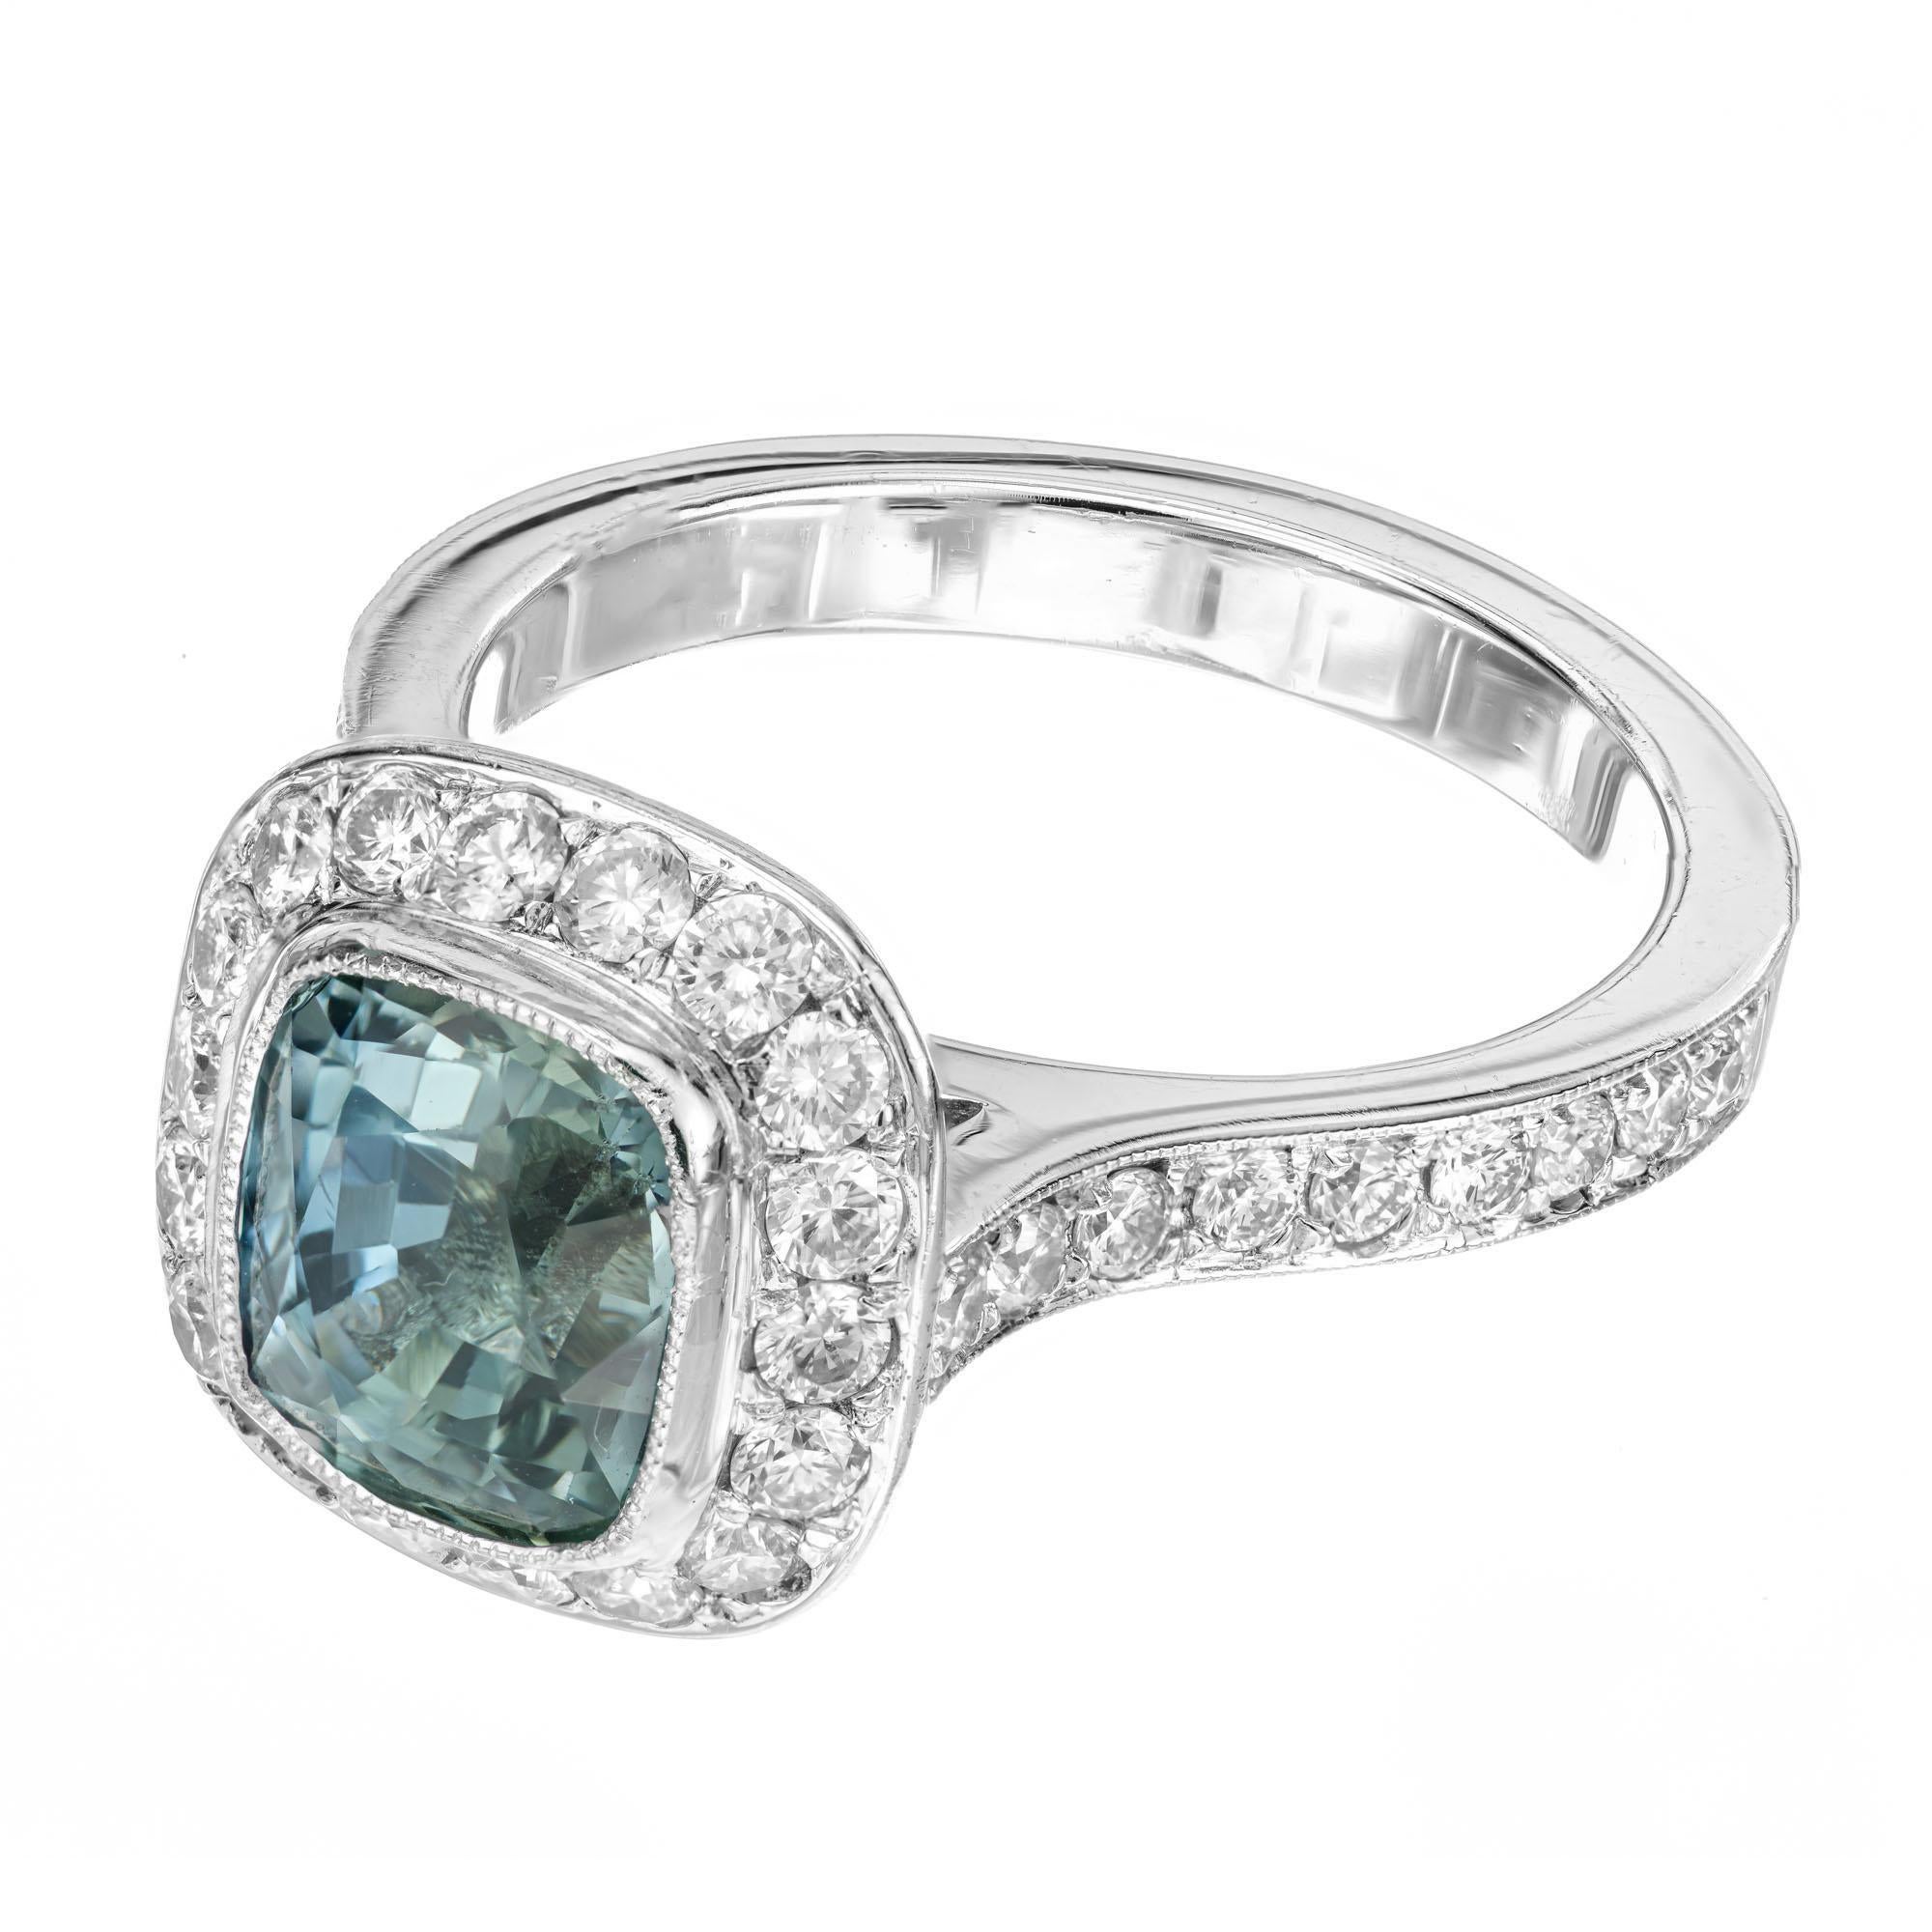 Bague de fiançailles en saphir bleu et vert et diamant. Saphir coussin de 3,20 carats certifié par le GIA, avec 48 diamants ronds de taille idéale dans une monture halo en platine. Les deux épaules de la tige sont également ornées de diamants ronds